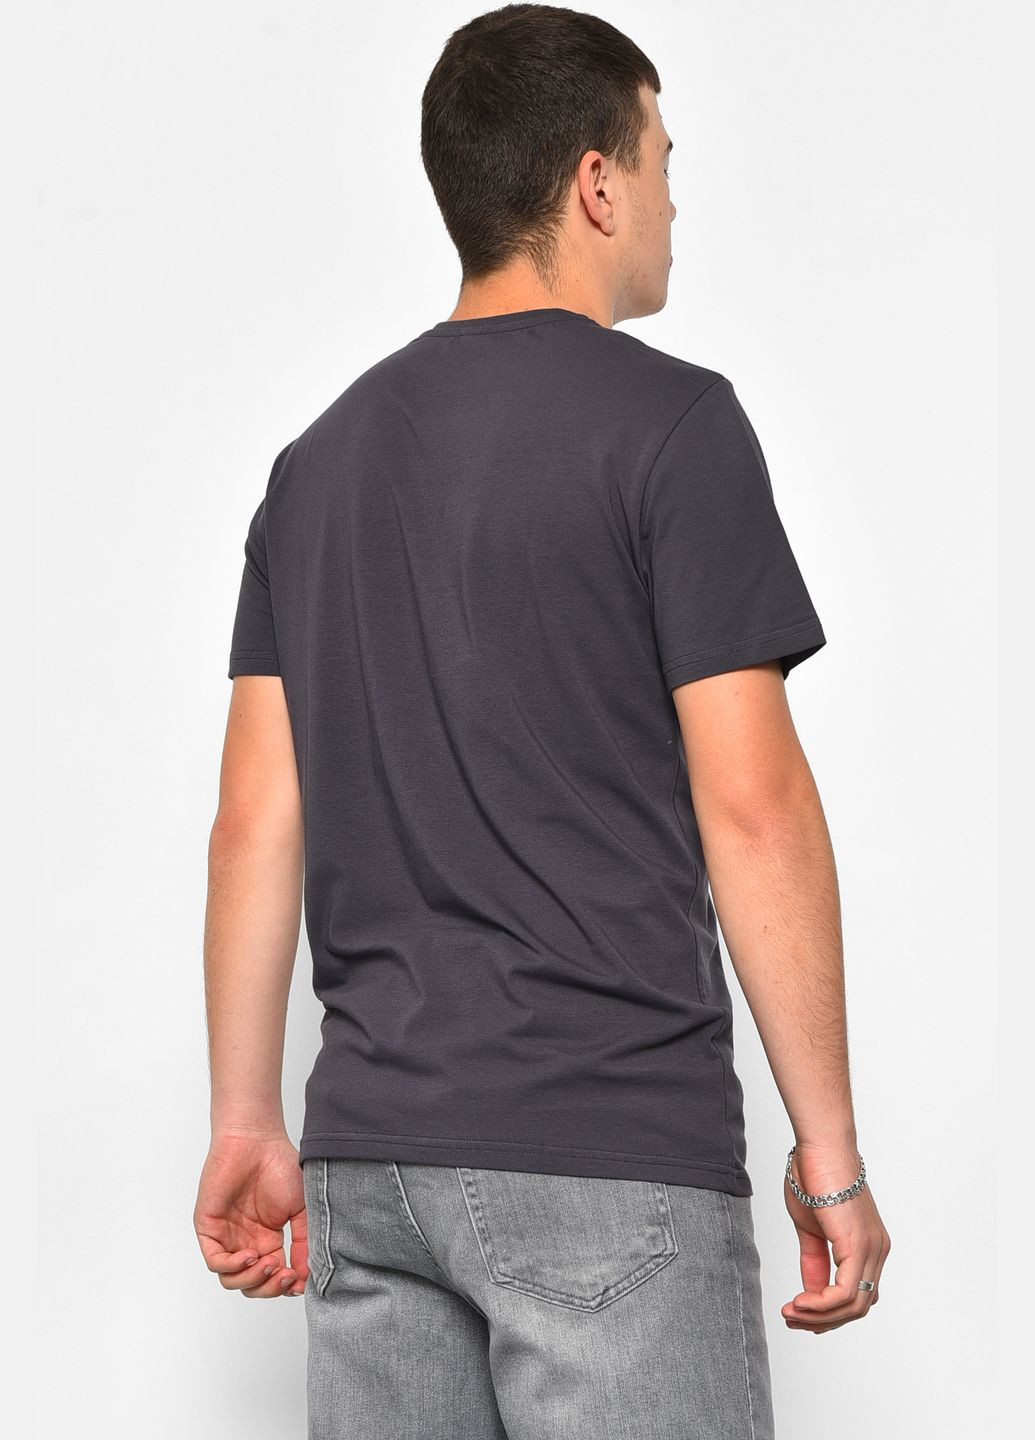 Темно-серая футболка мужская полубатальная темно-серого цвета Let's Shop